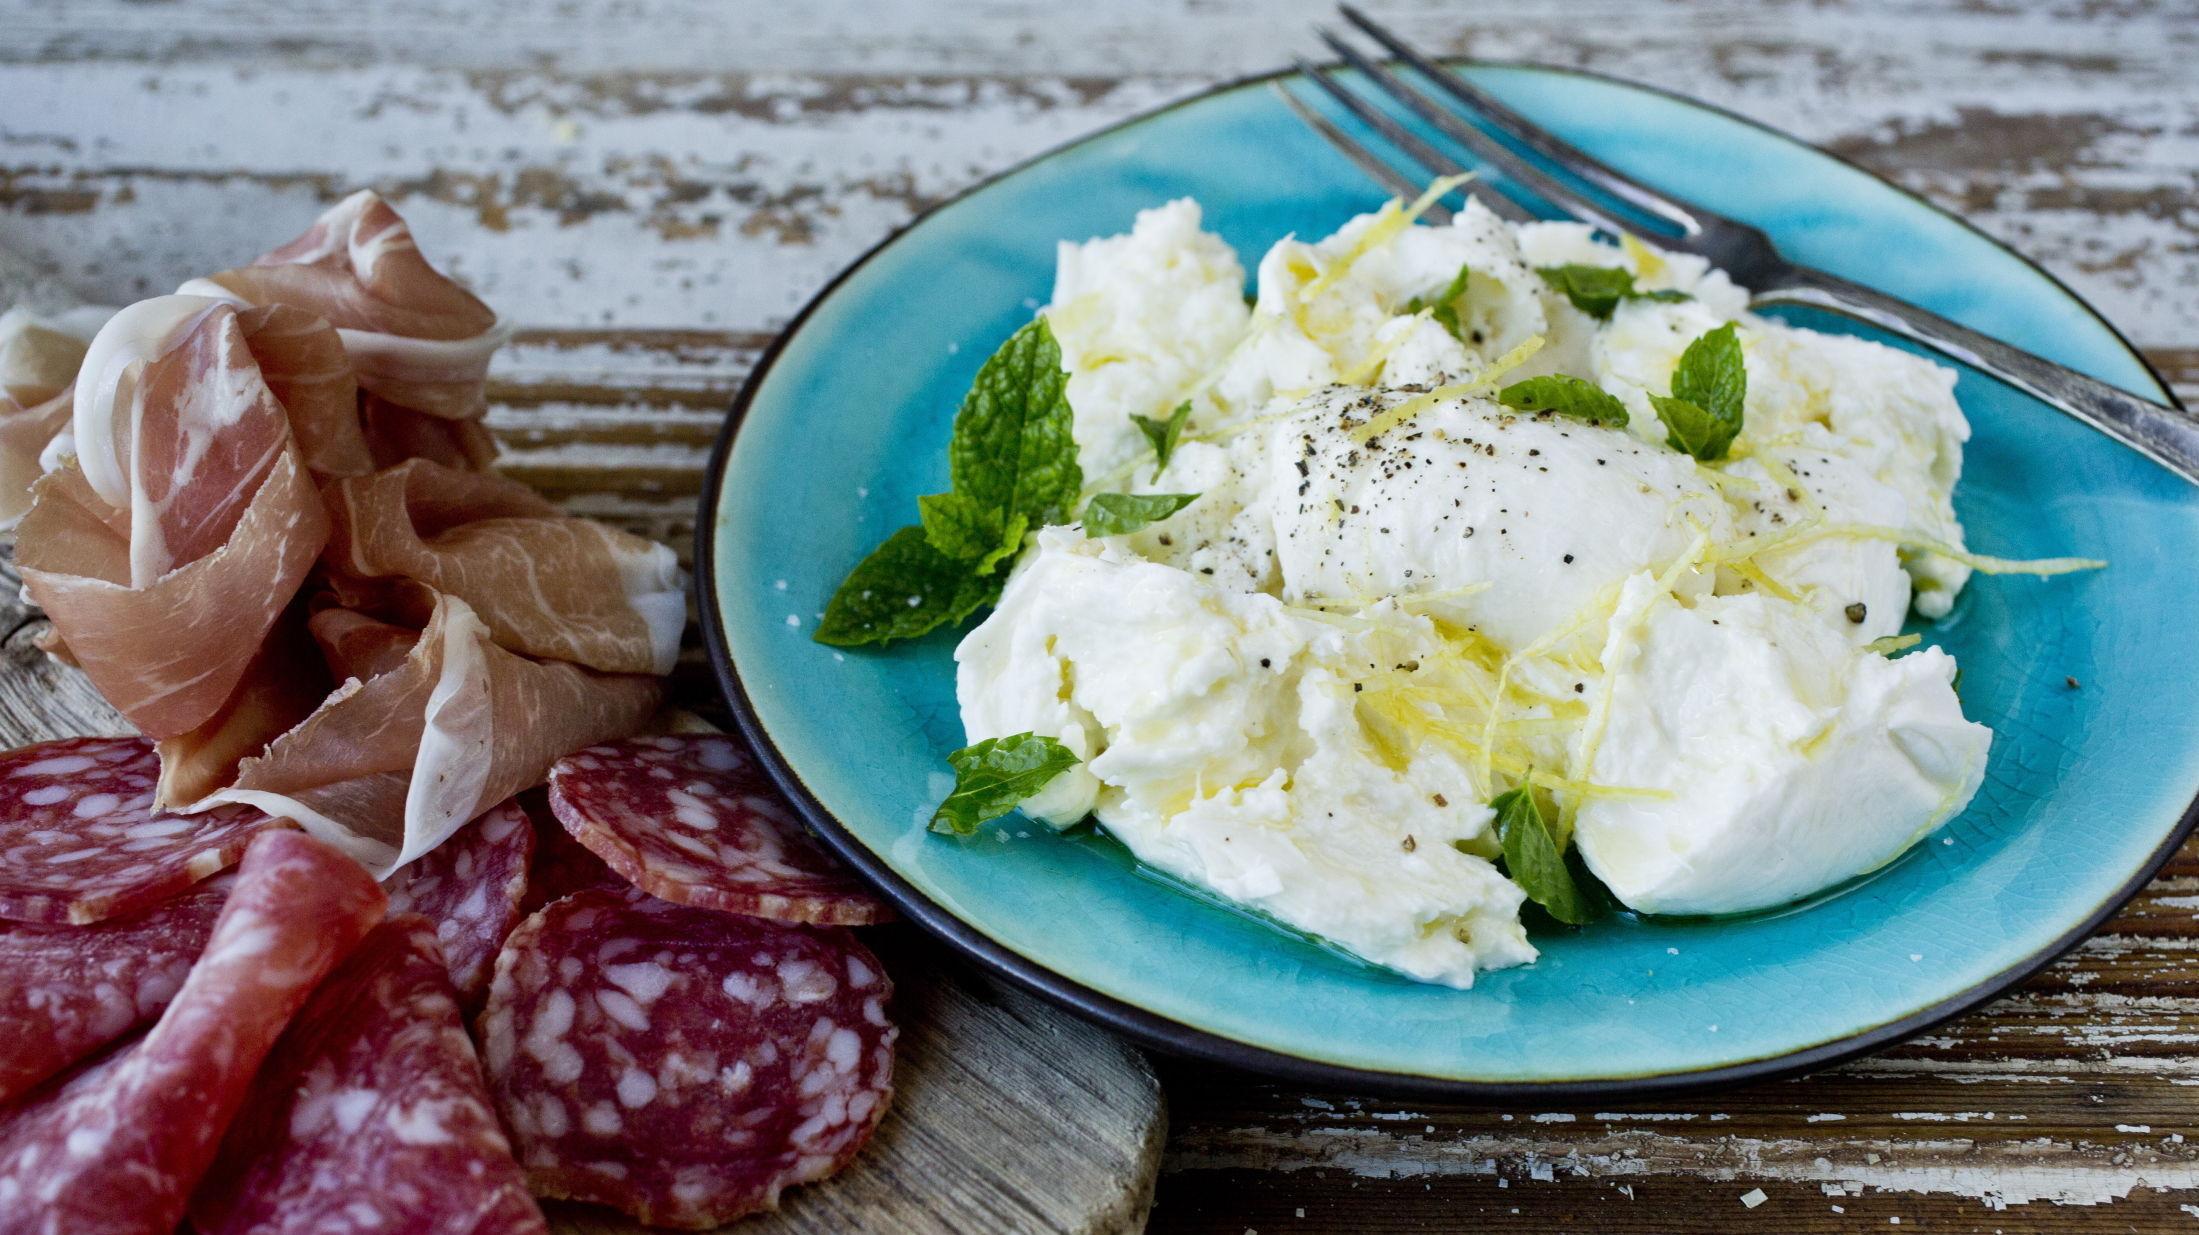 NYDELIG: Mozzarella med sitron og mynte er nydelig tilbehør til spekemat. Oppskriften finner du her. Foto: Sara Johannessen/VG